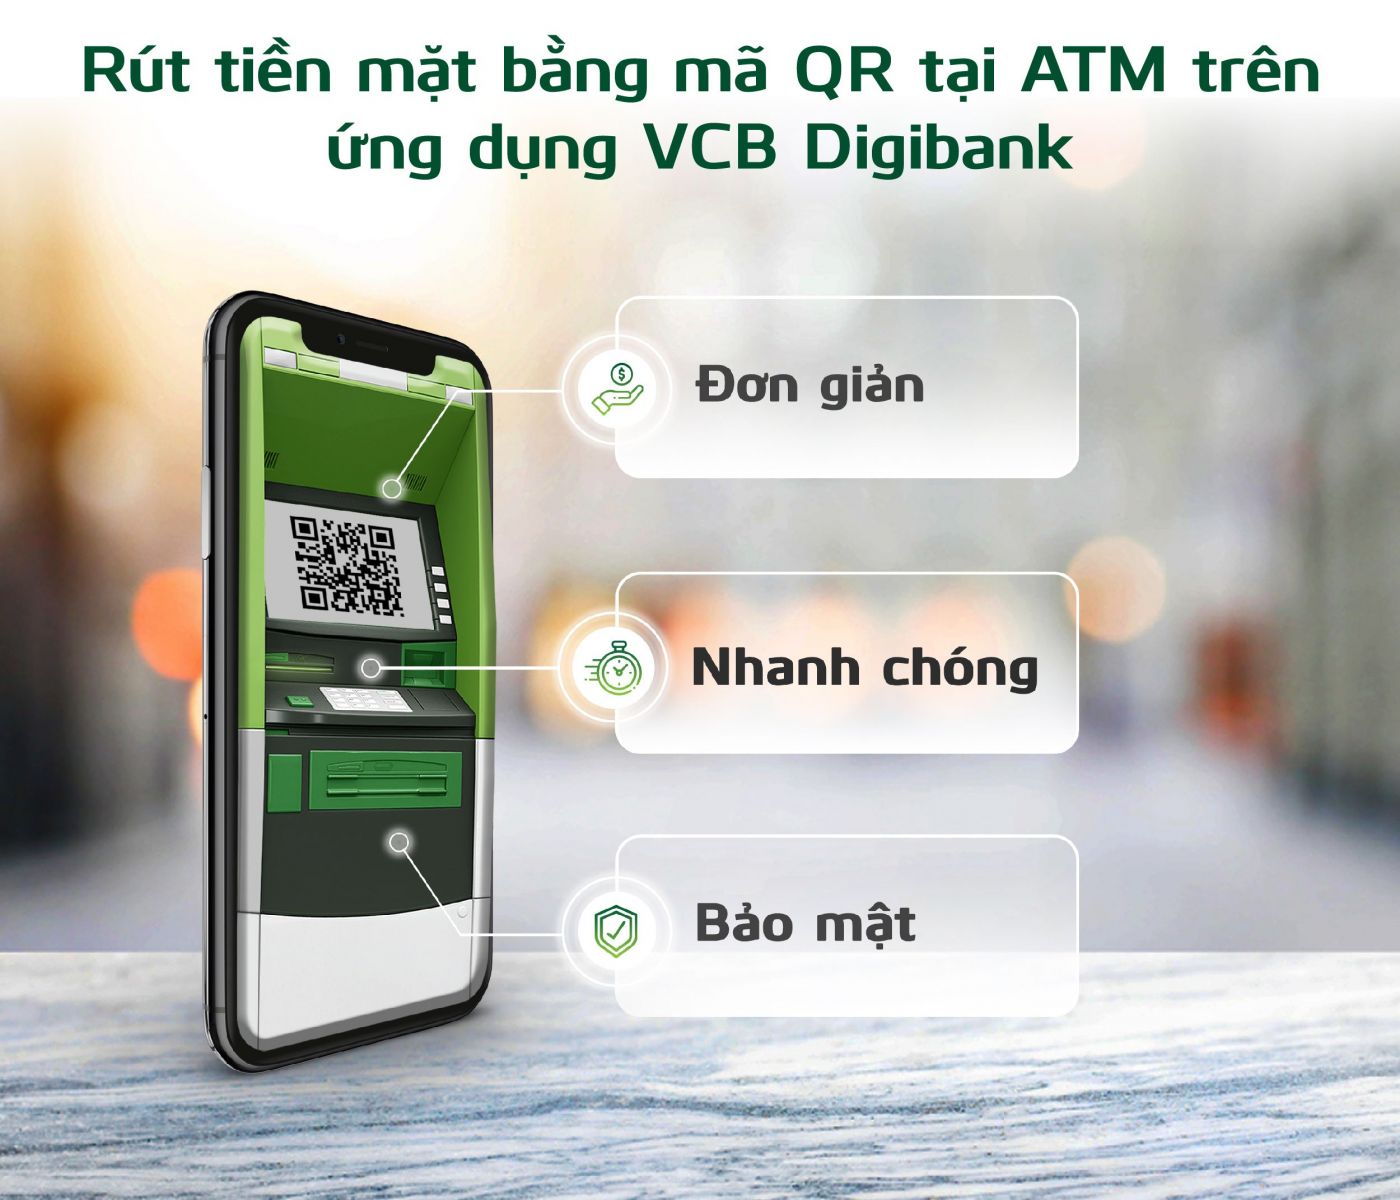 ATM của Vietcombank